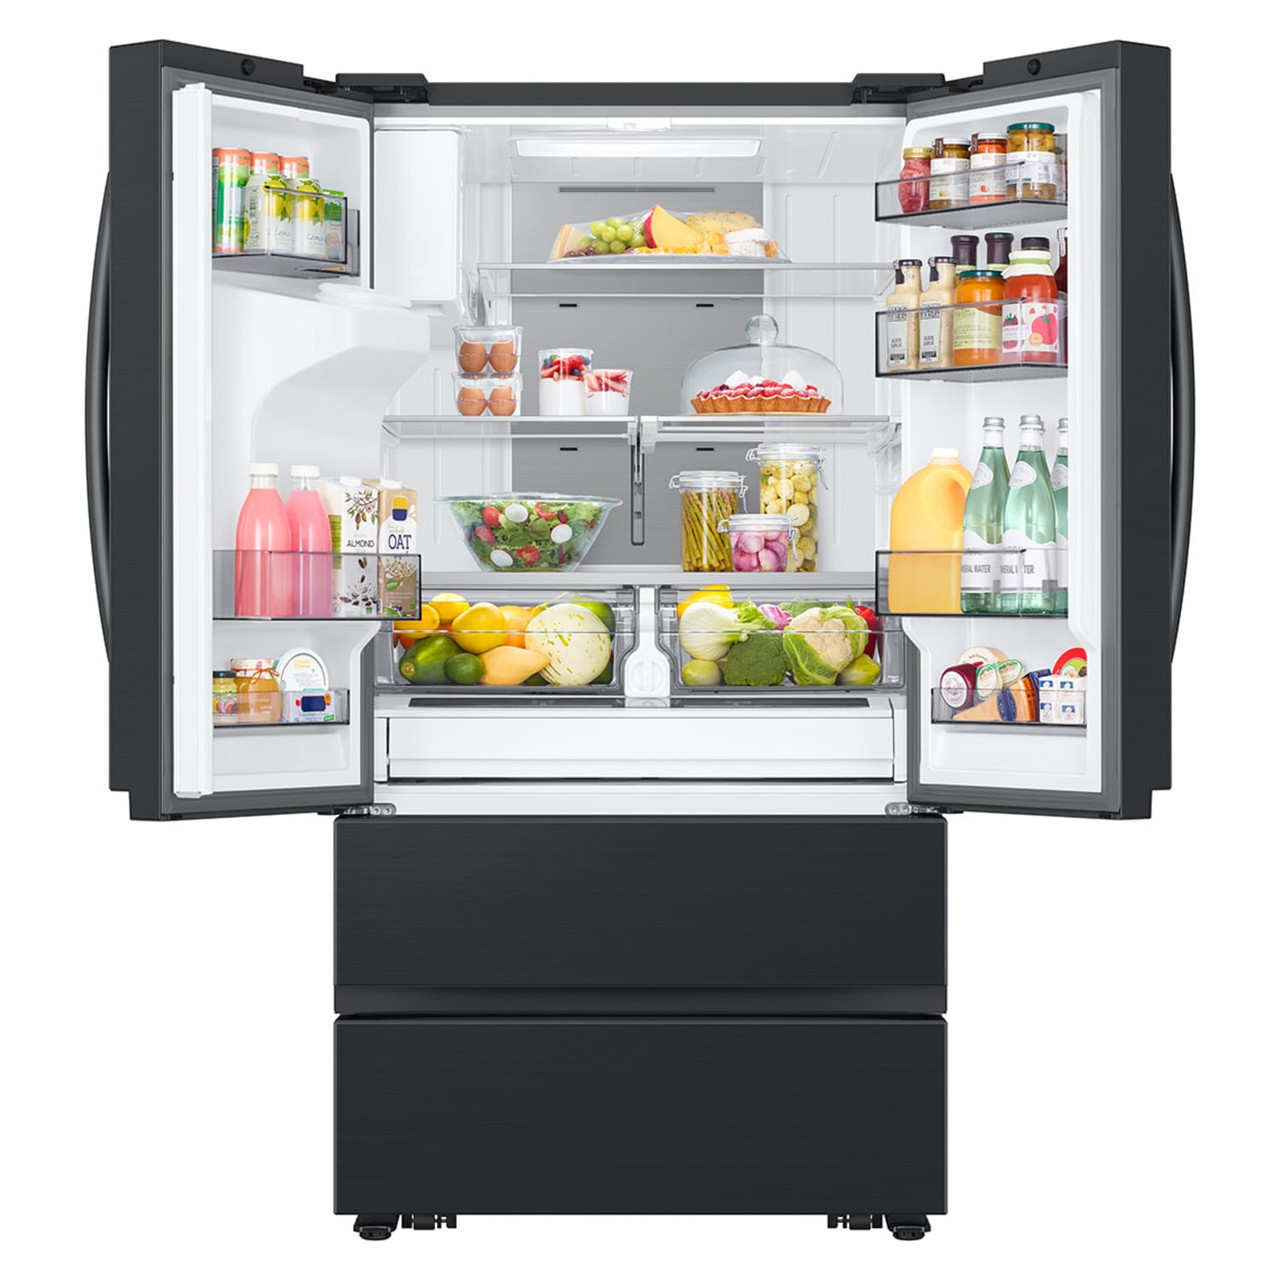 Samsung 30 cu. ft. Mega Capacity 4-Door French Door Refrigerator with Four Types of Ice in Matte Black Steel - RF31CG7400MT